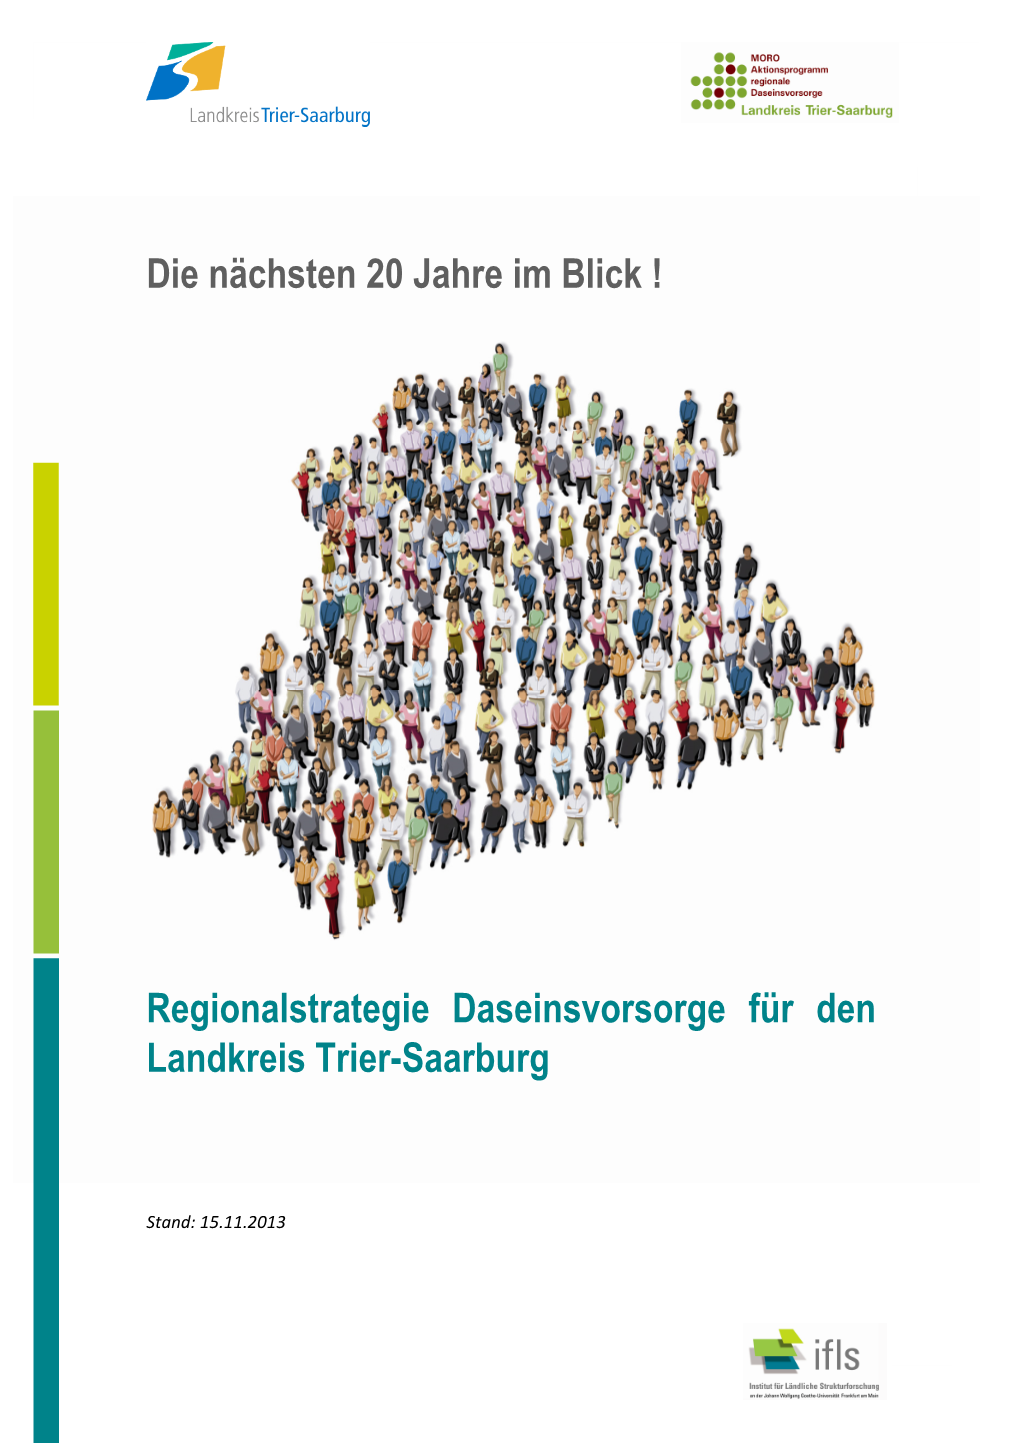 Regionalstrategie Daseinsvorsorge Für Den Landkreis Trier-Saarburg